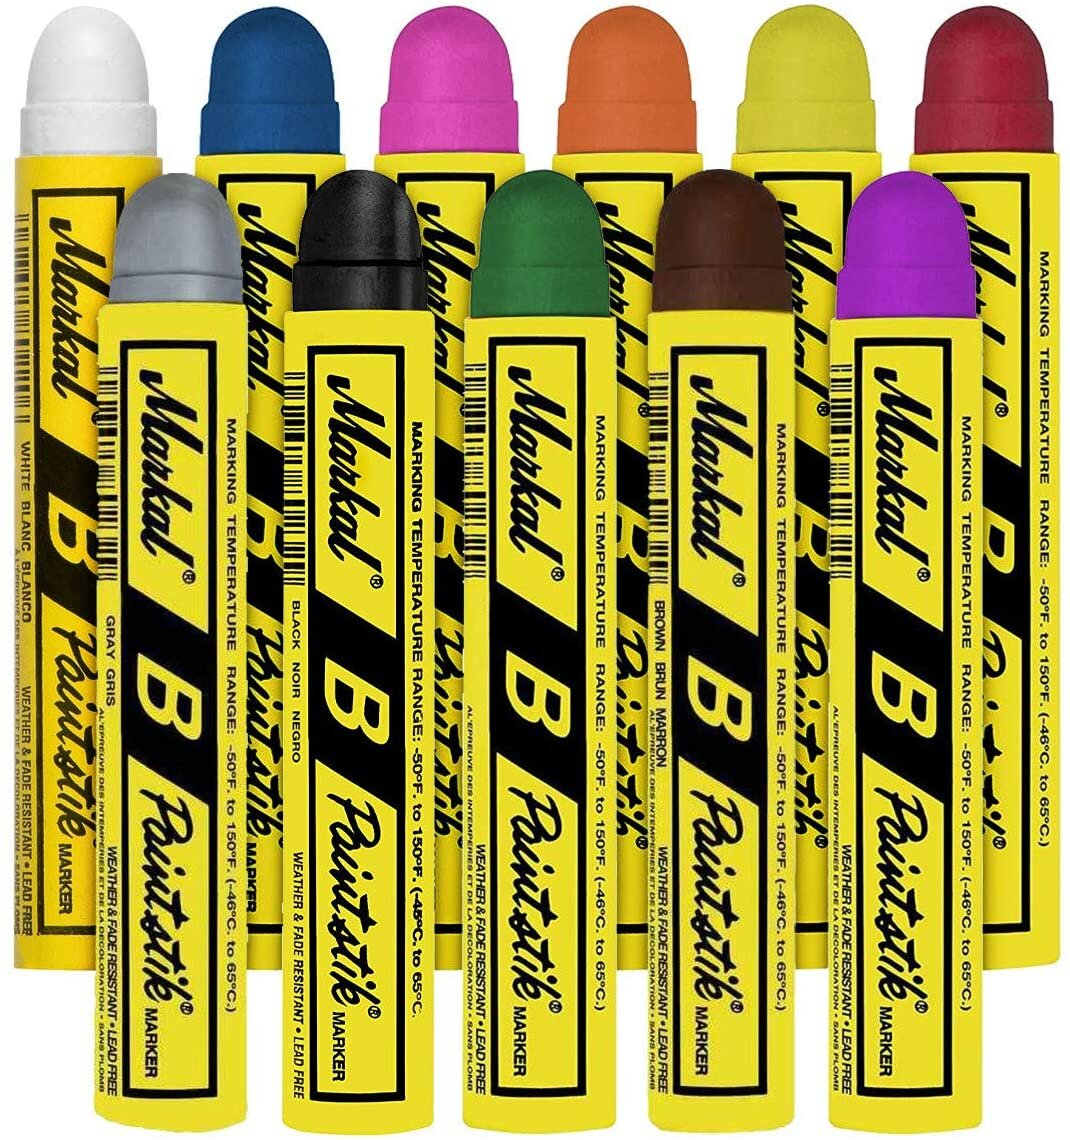 Маркер краска для граффити мелок с твердой краской Markal B Paintstik набор из 11 штук разных цветов